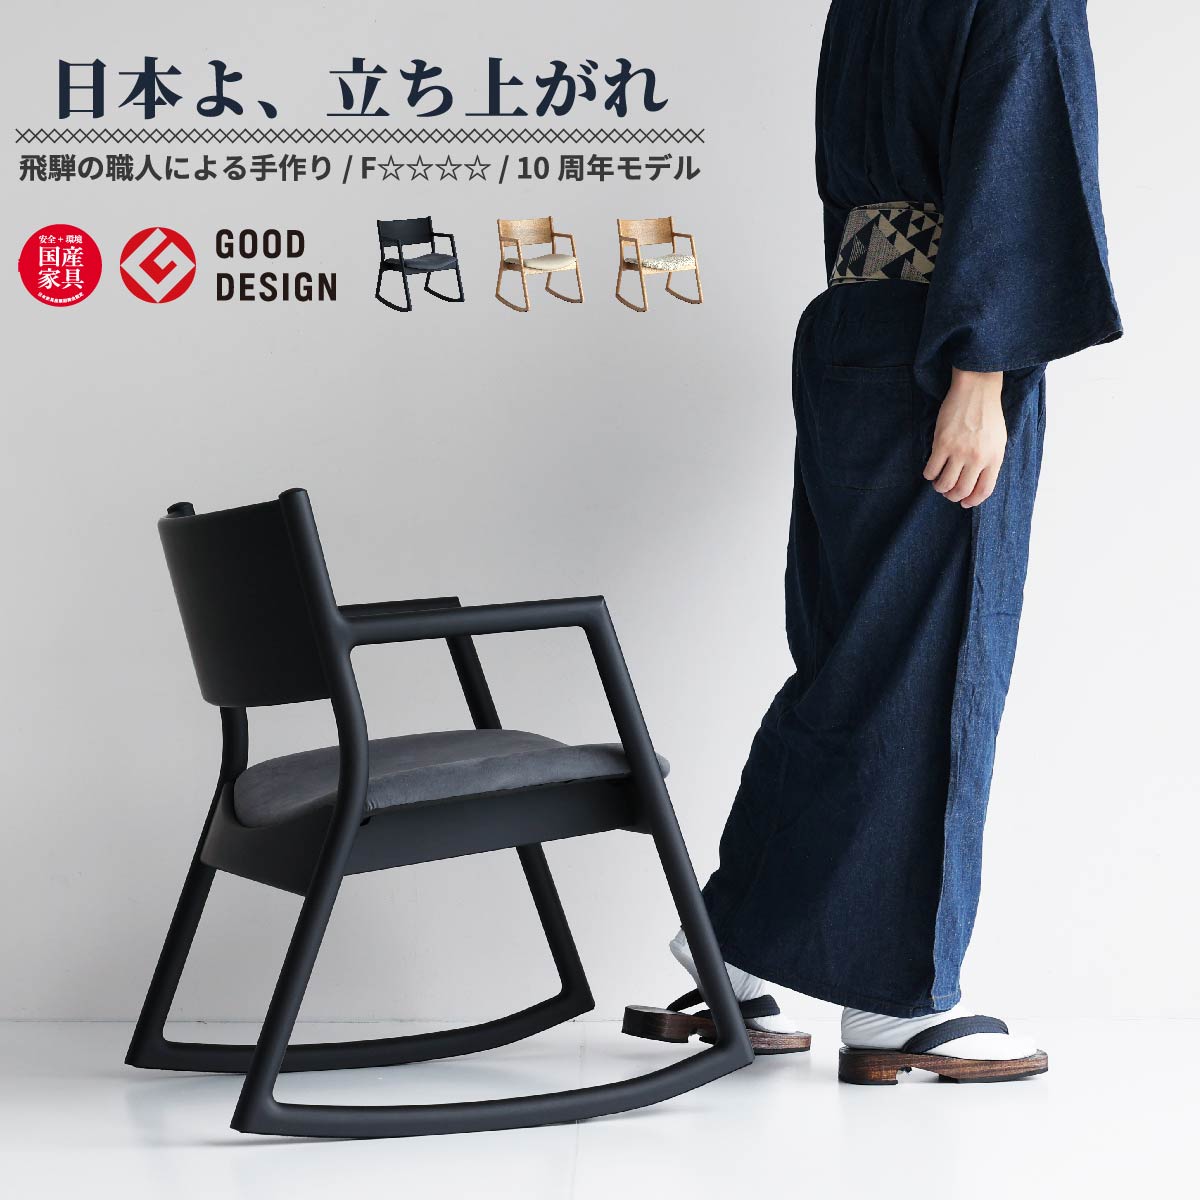 日本製 ロッキングチェア アームチェア ロッキングアームチェア ロッキンチェア おすすめ おしゃれ 天然木 幅54cm 奥行64cm 高さ73cm  座面高43cm 椅子 チェアー